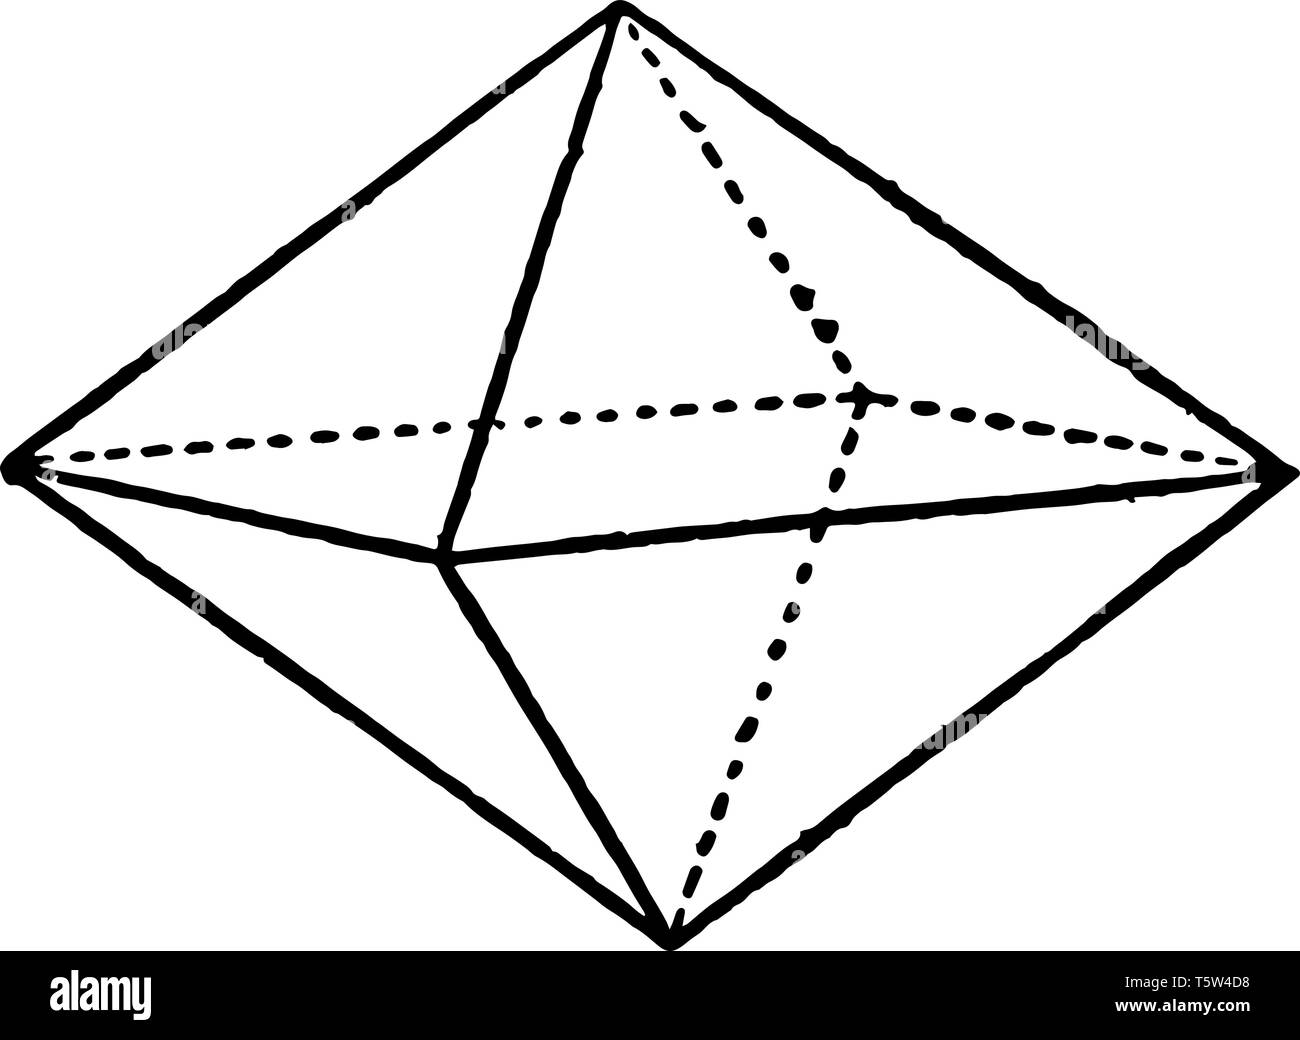 L'image Bipyramids tétragonal, où l'axe vertical est plus petit que l'axe horizontal, vintage dessin ou gravure illustration. Illustration de Vecteur